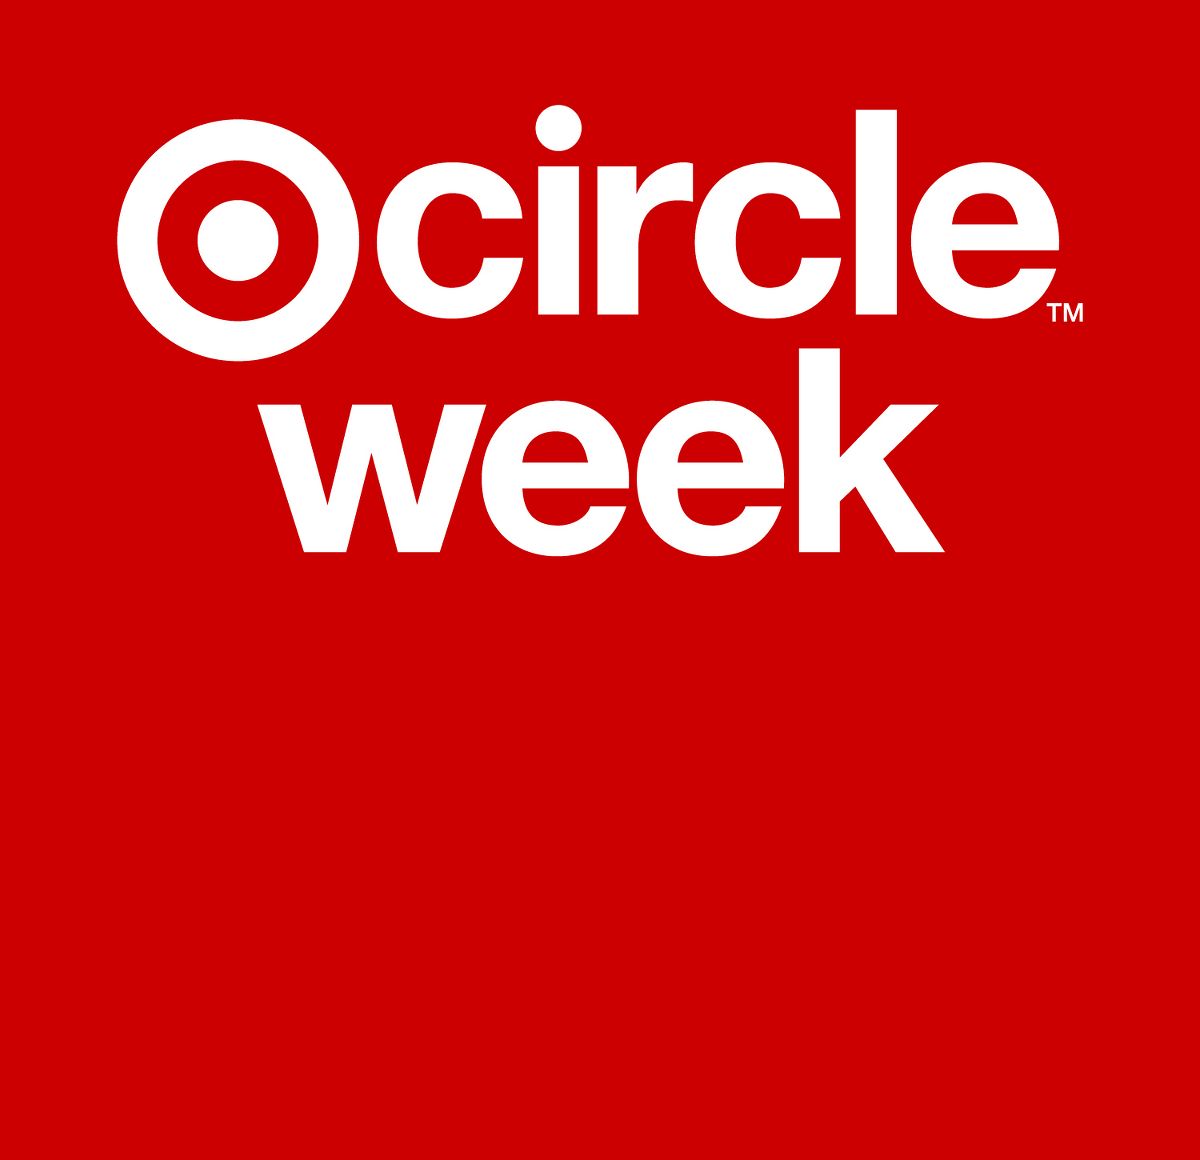 Target CircleTM Week